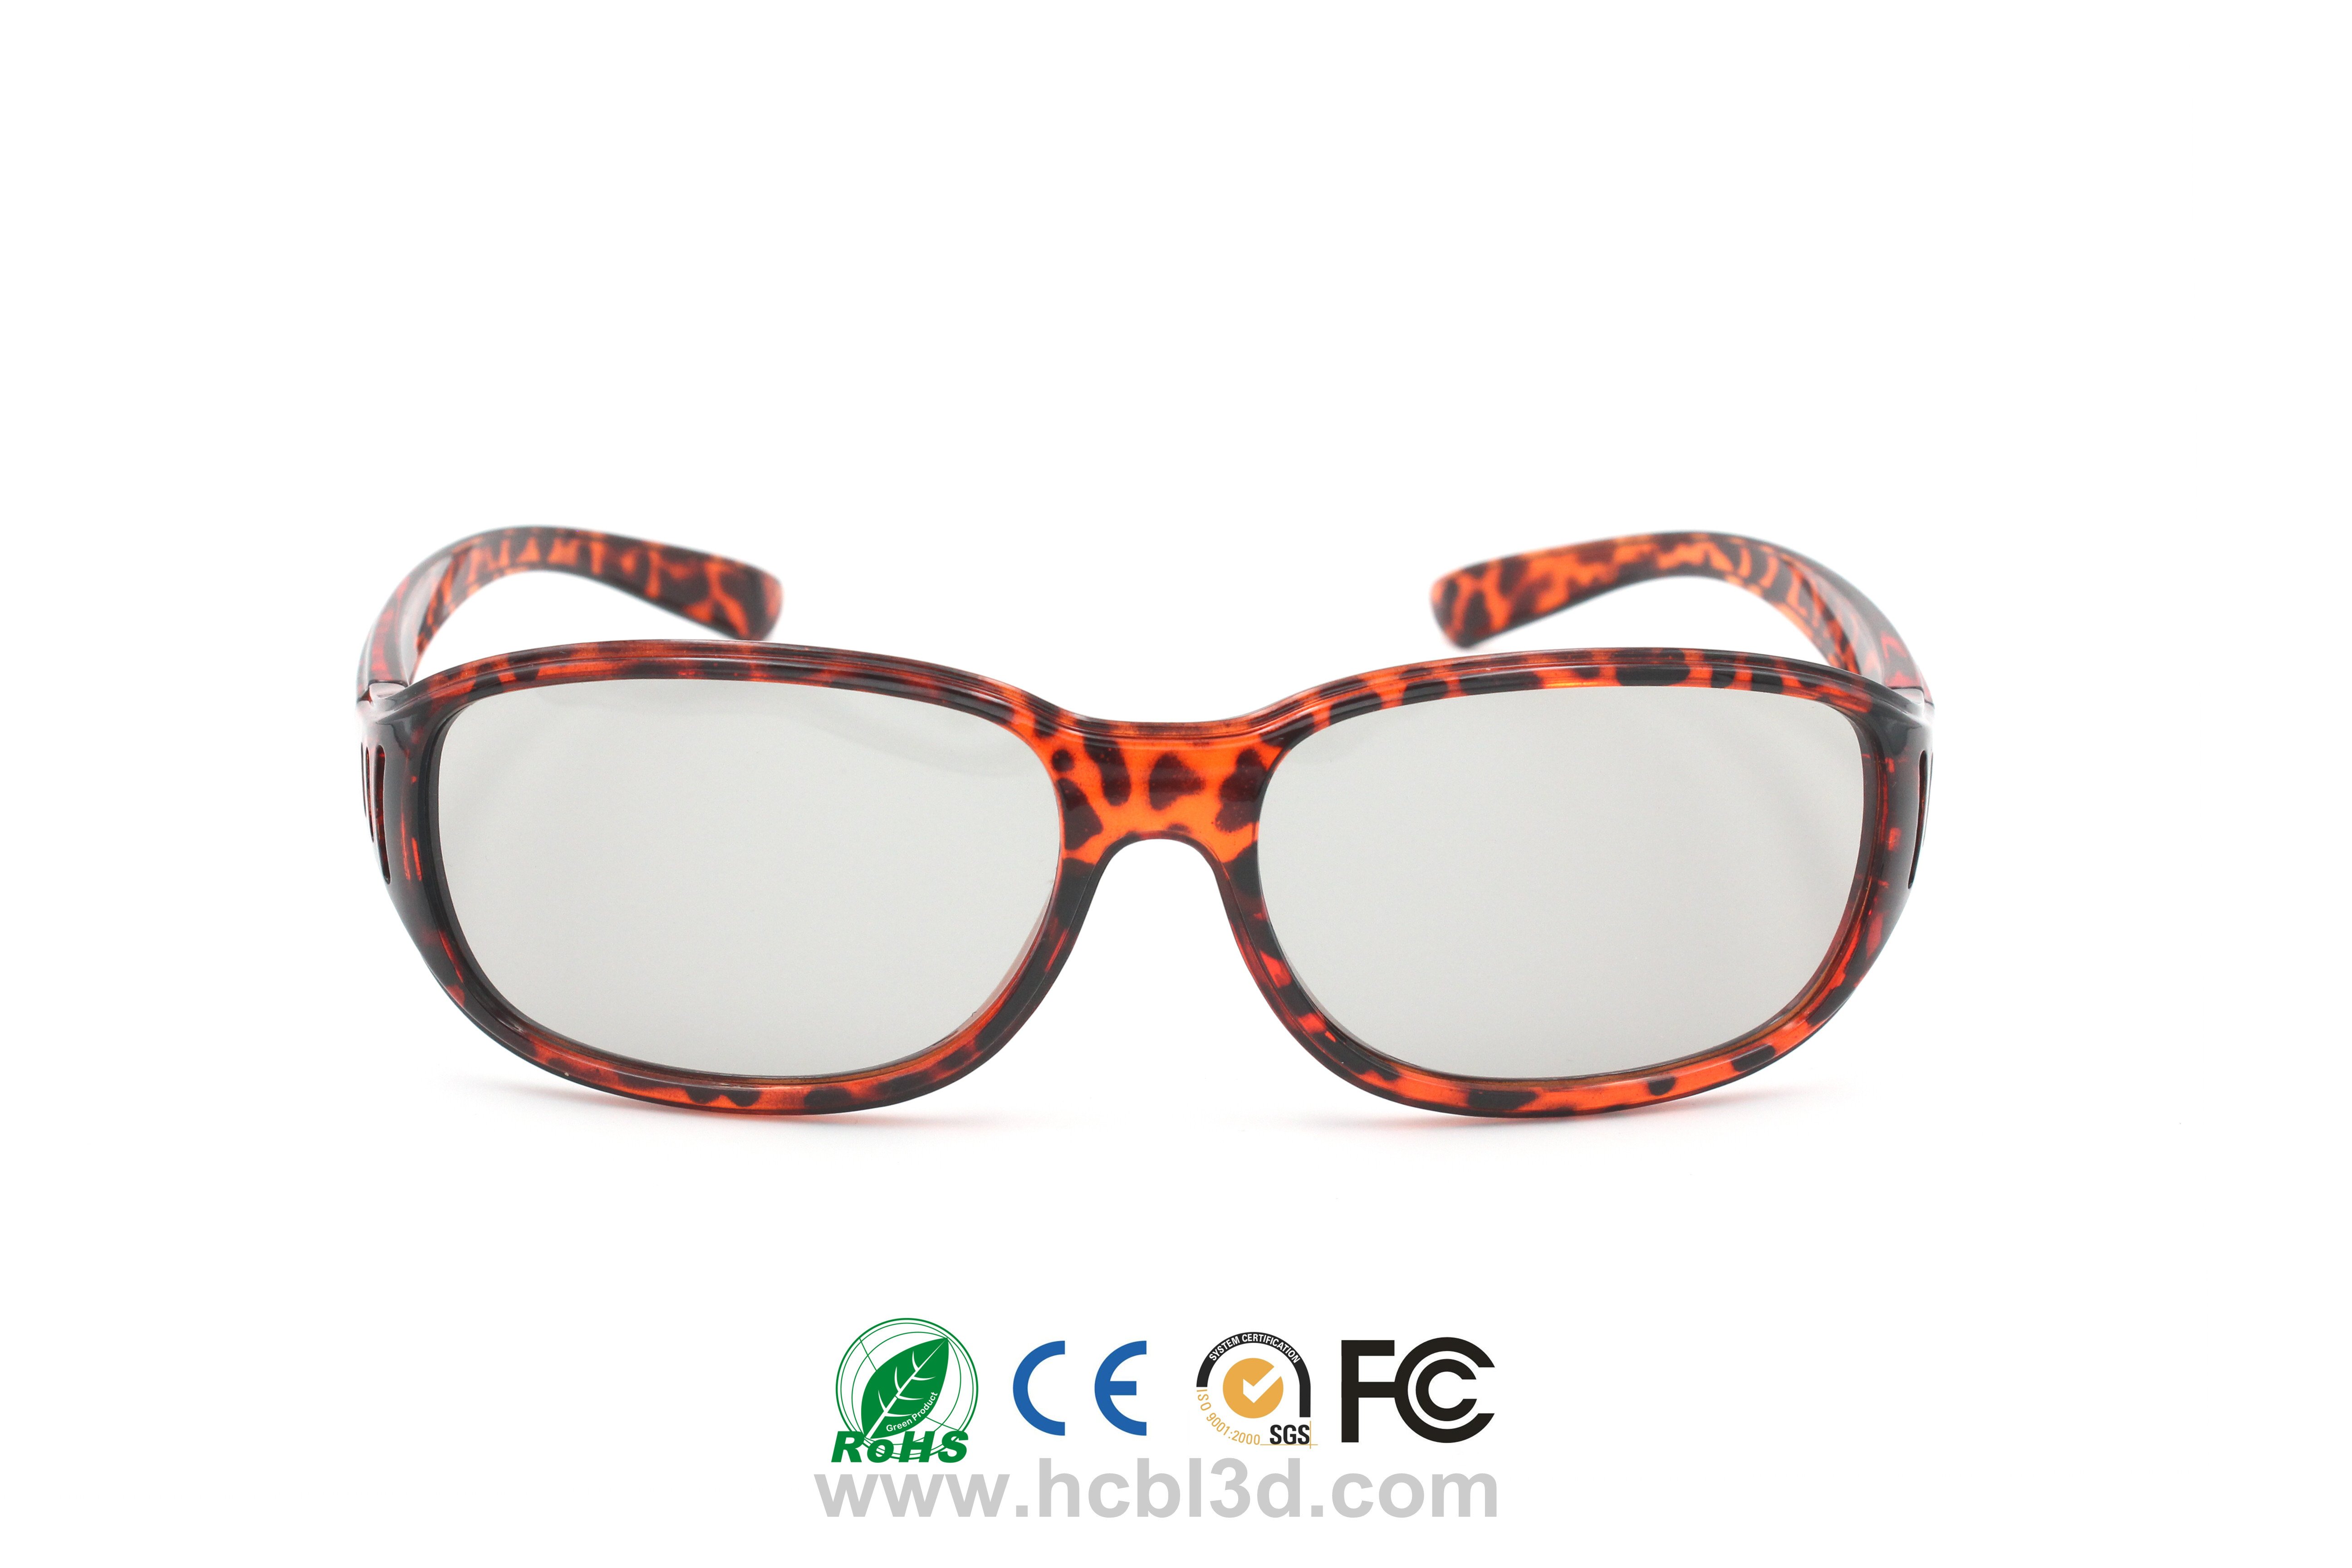 Mehrfach verwendbare 3D-Brille für 3D-Kino Red Panther Design Wiederverwendbar